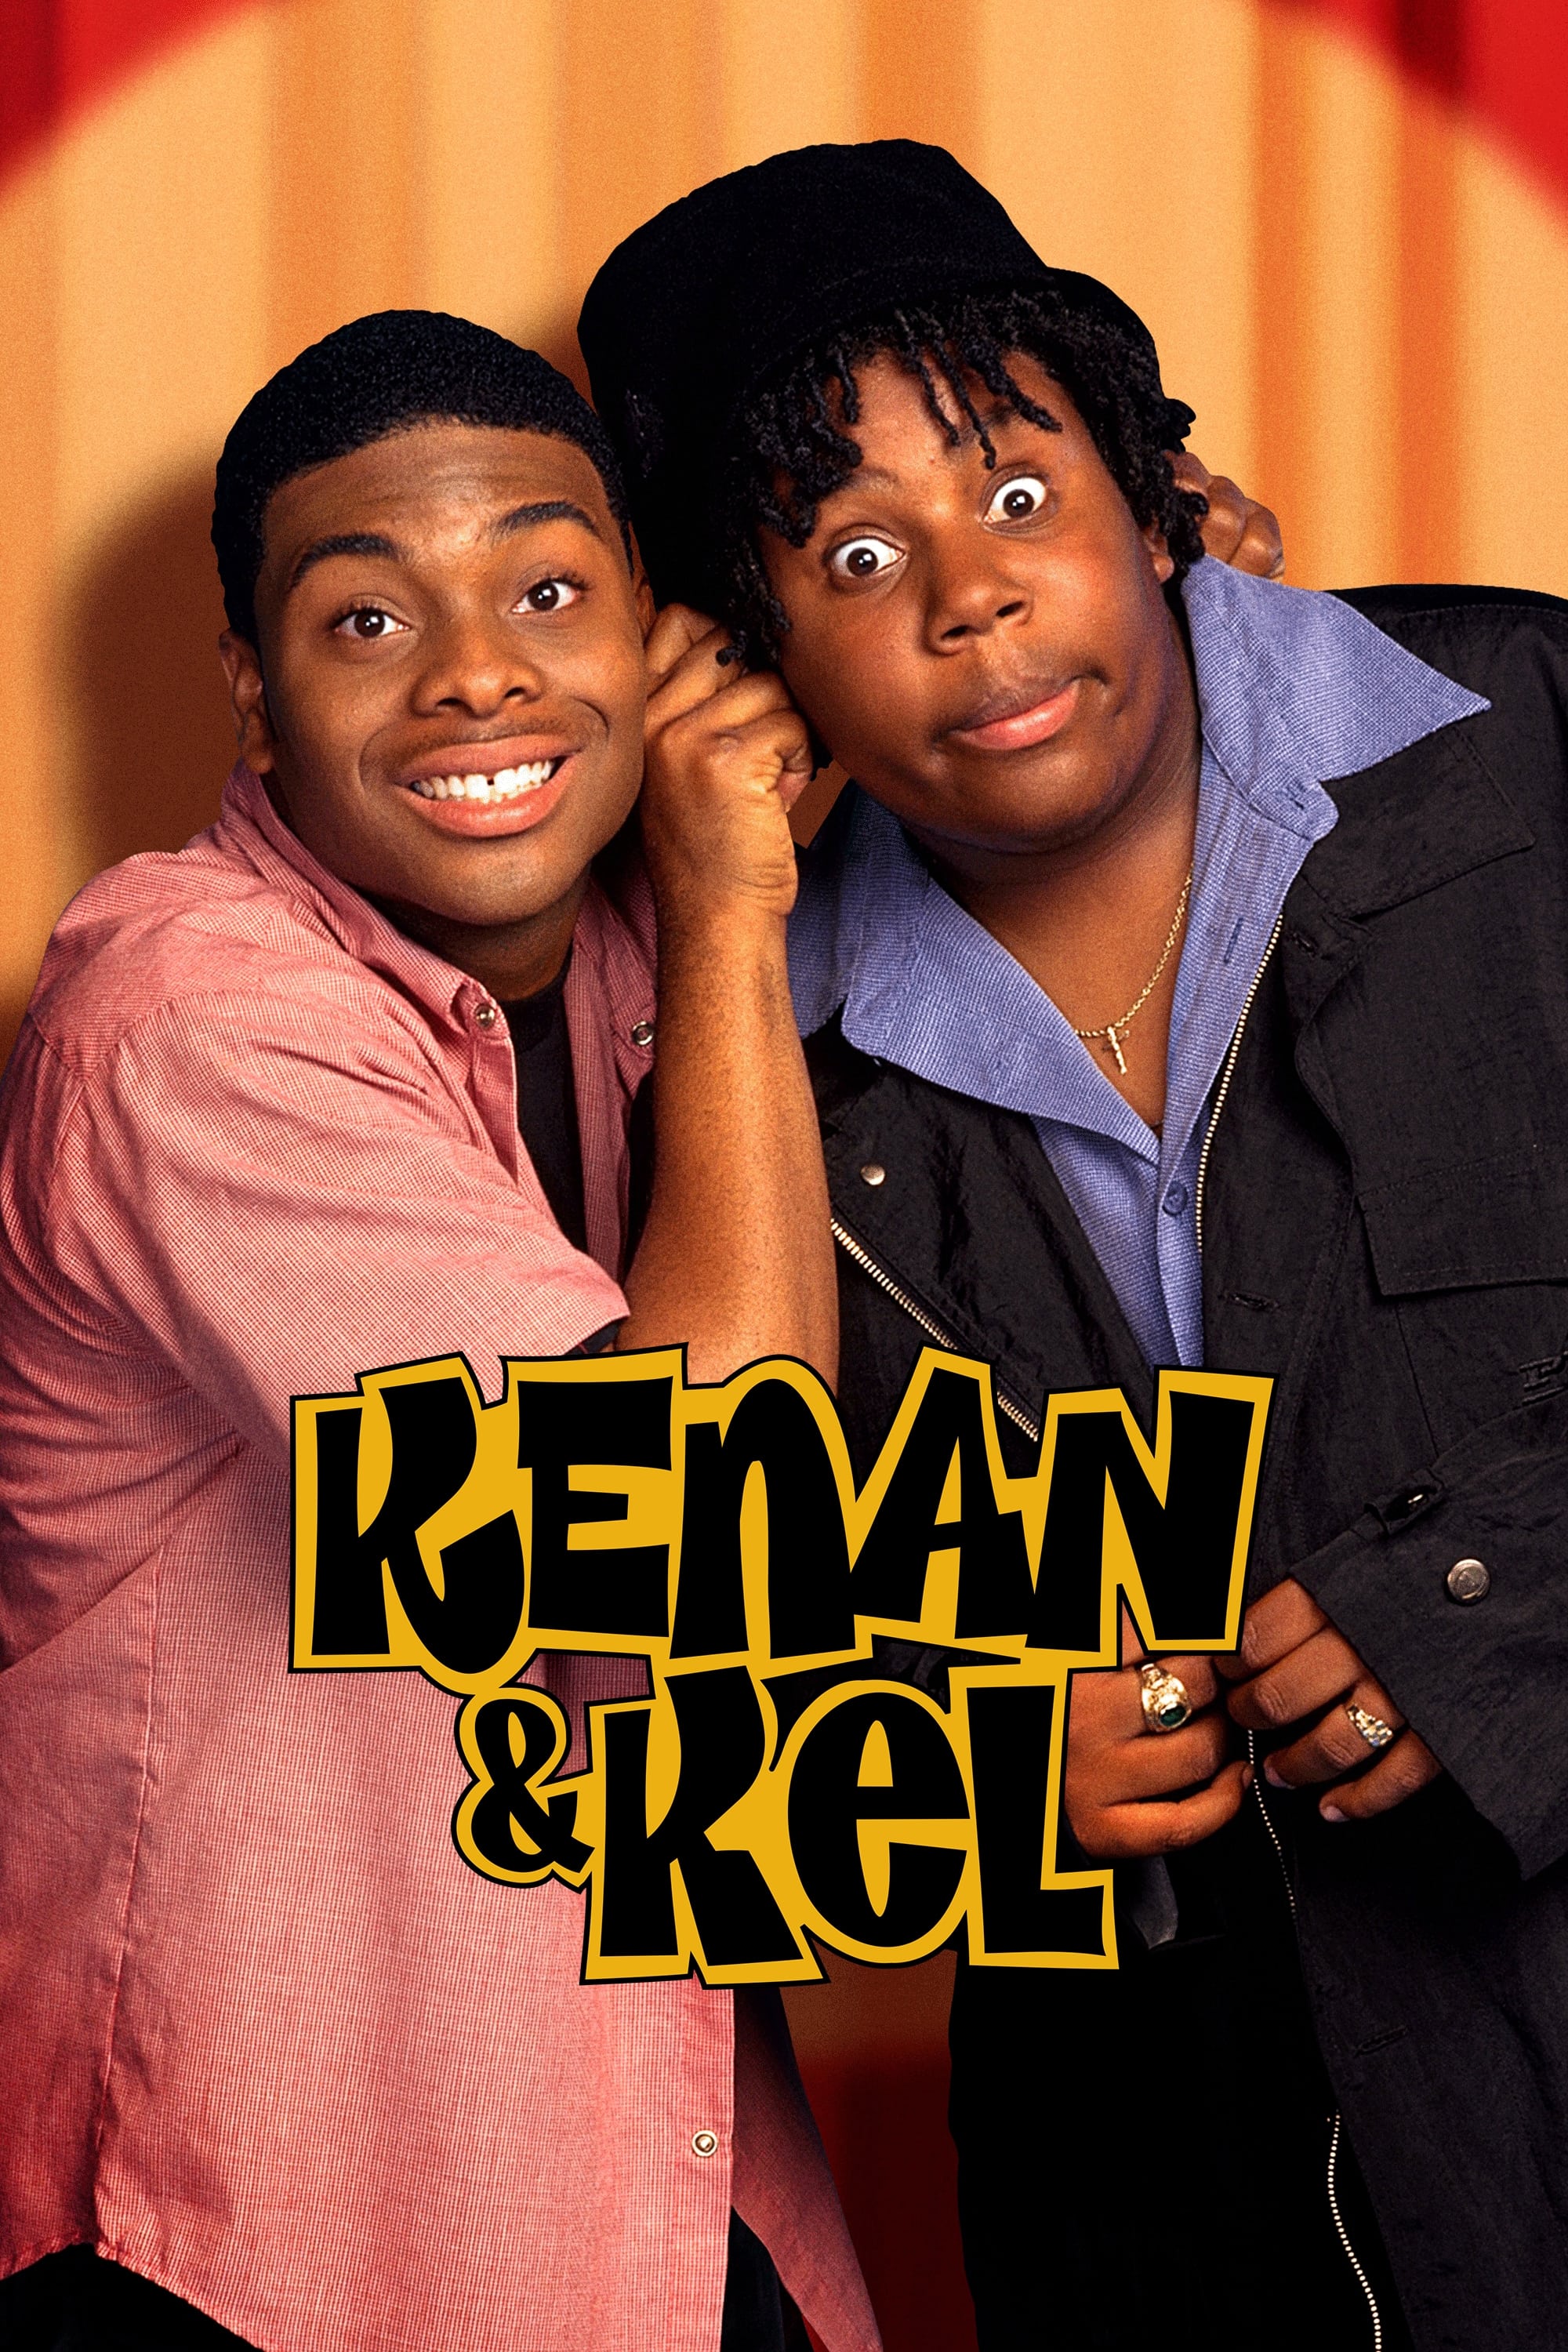 Kenan & Kel (1996)